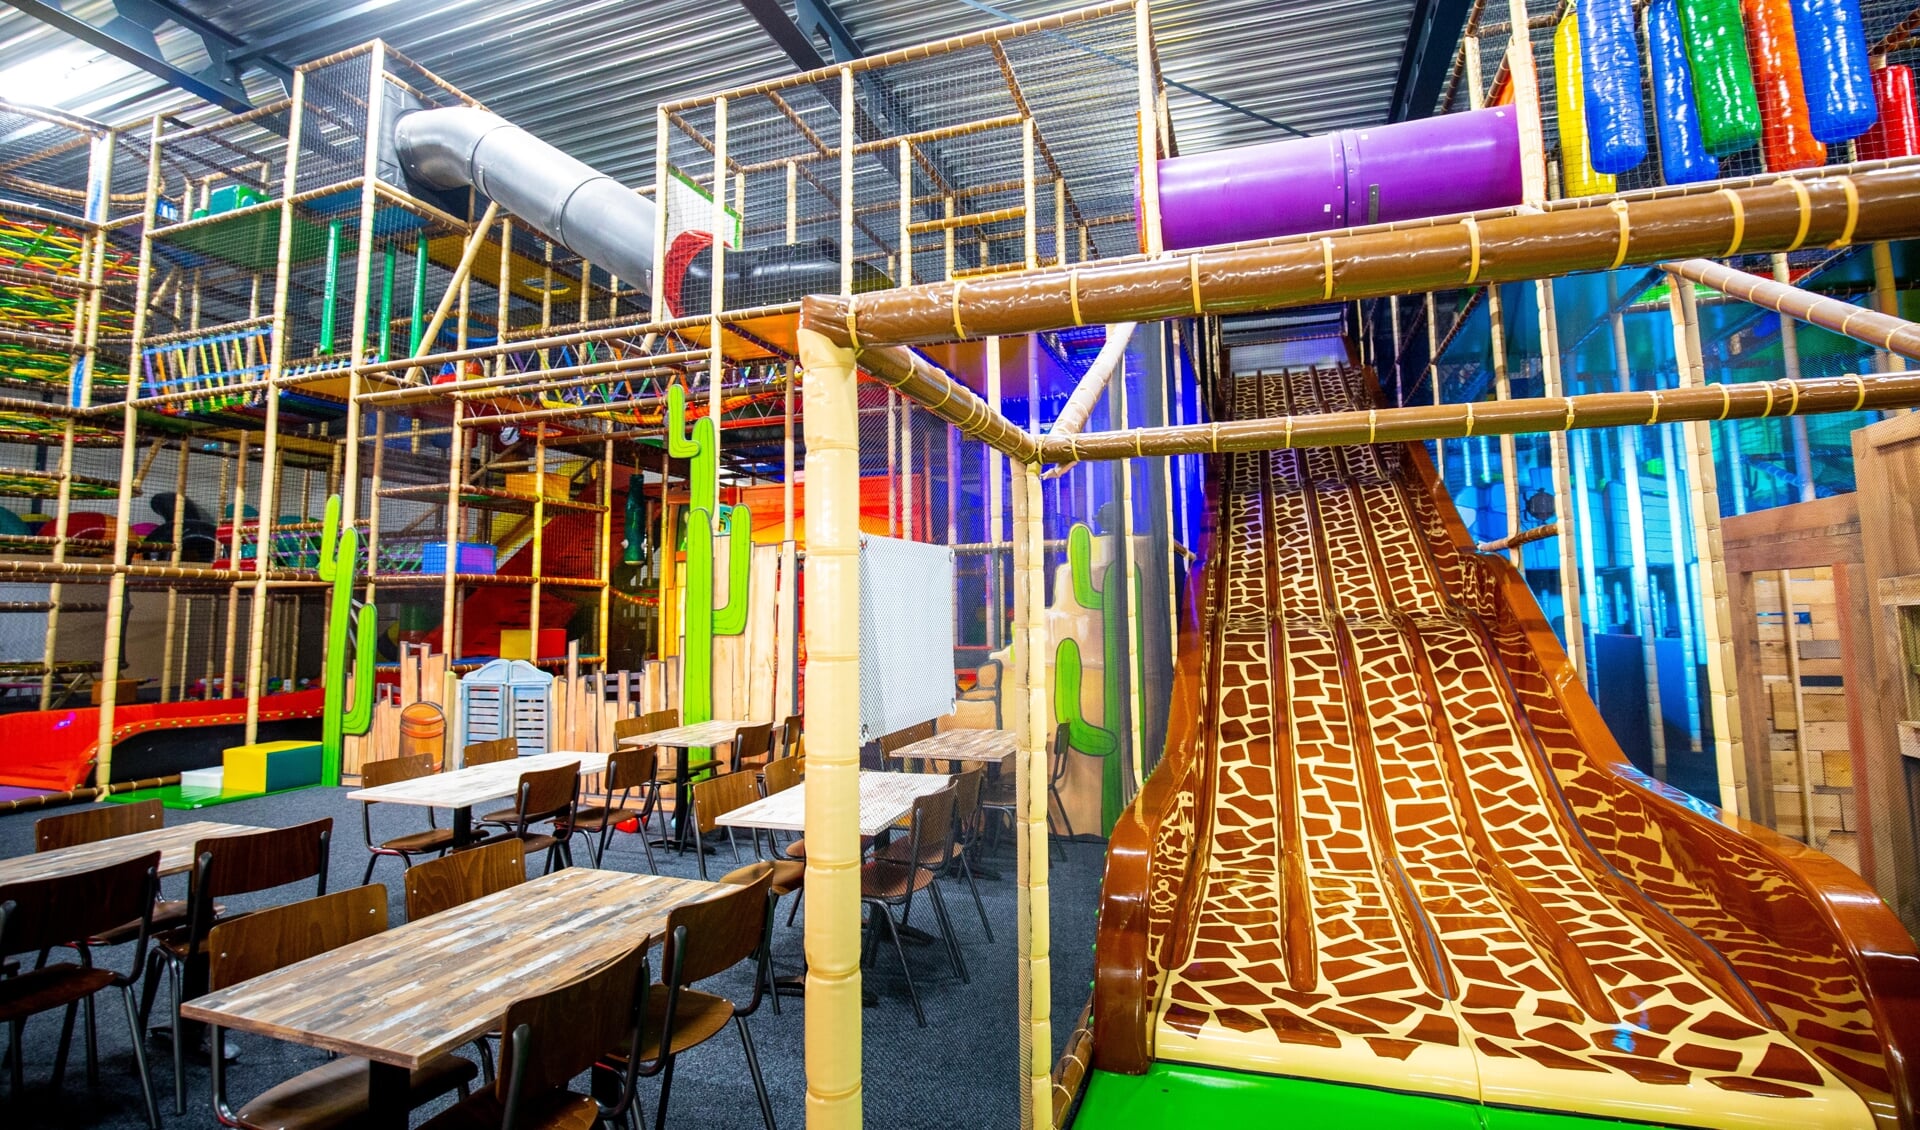 Indoor speelparadijs Monkey Town Delft is weer geopend